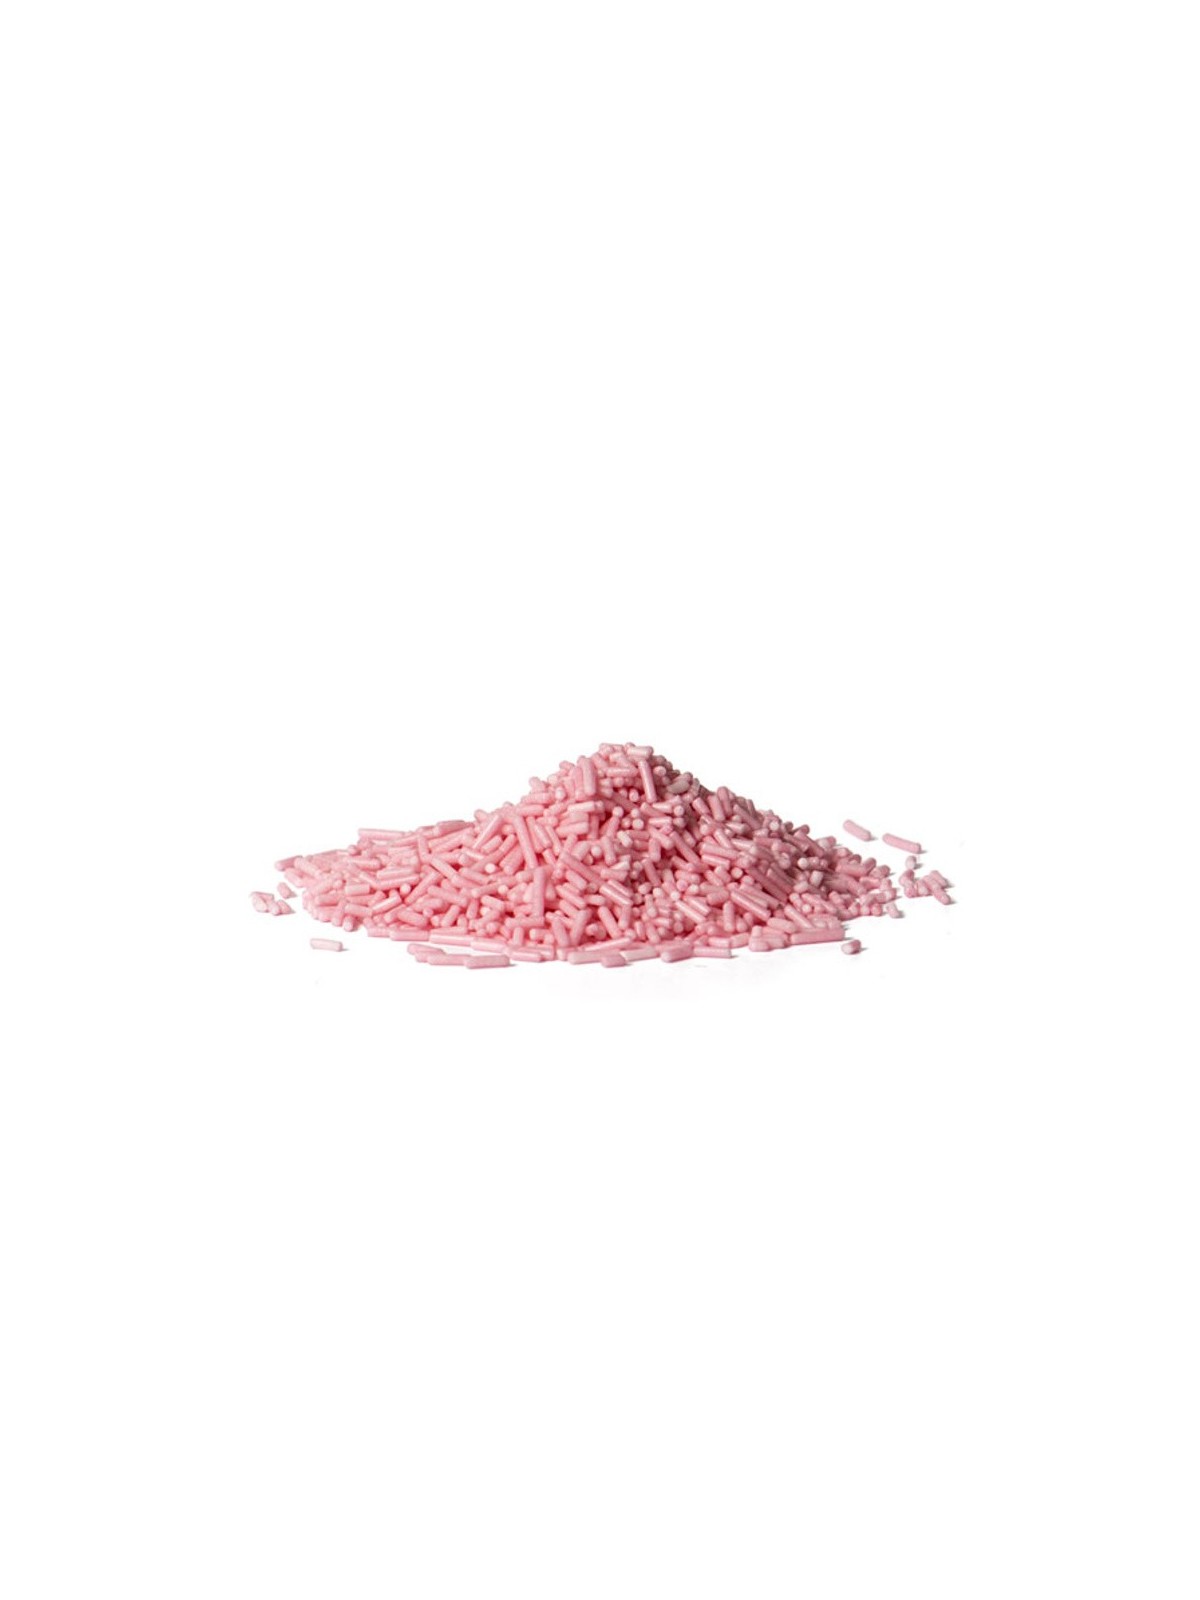 Cukrová rýže - růžová 100g